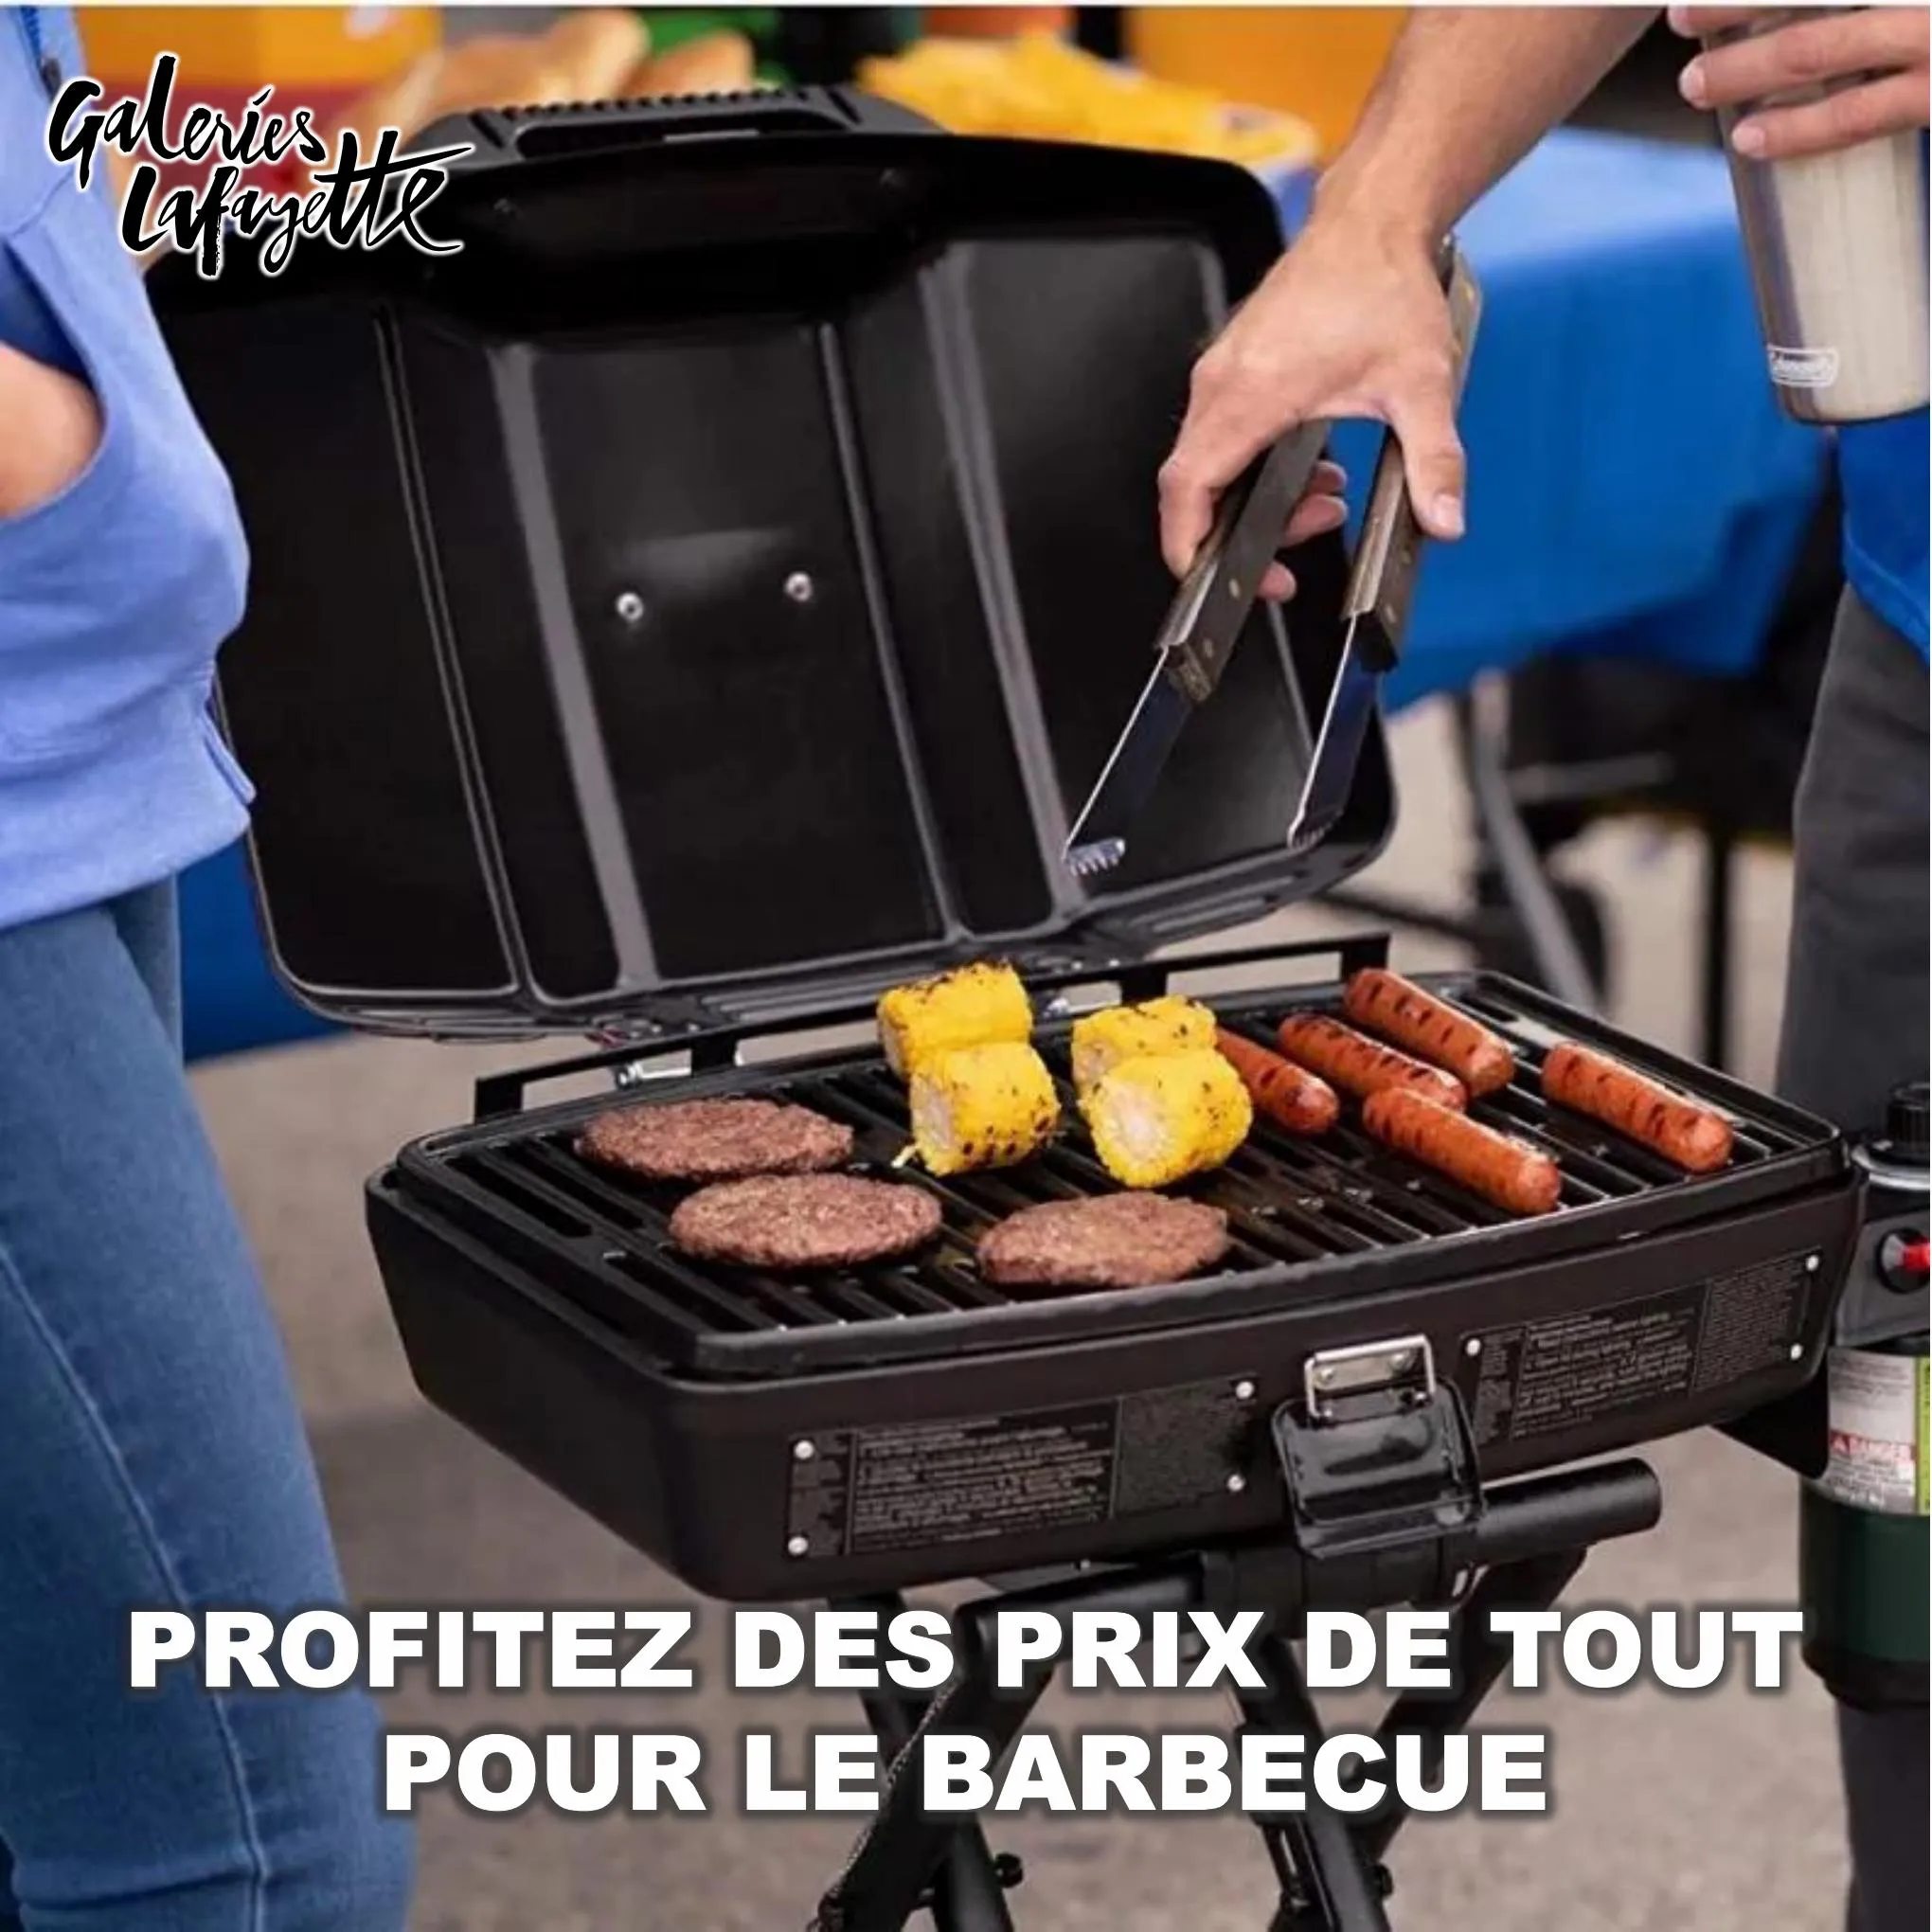 Catalogue Profitez des prix de tout pour le barbecue, page 00001